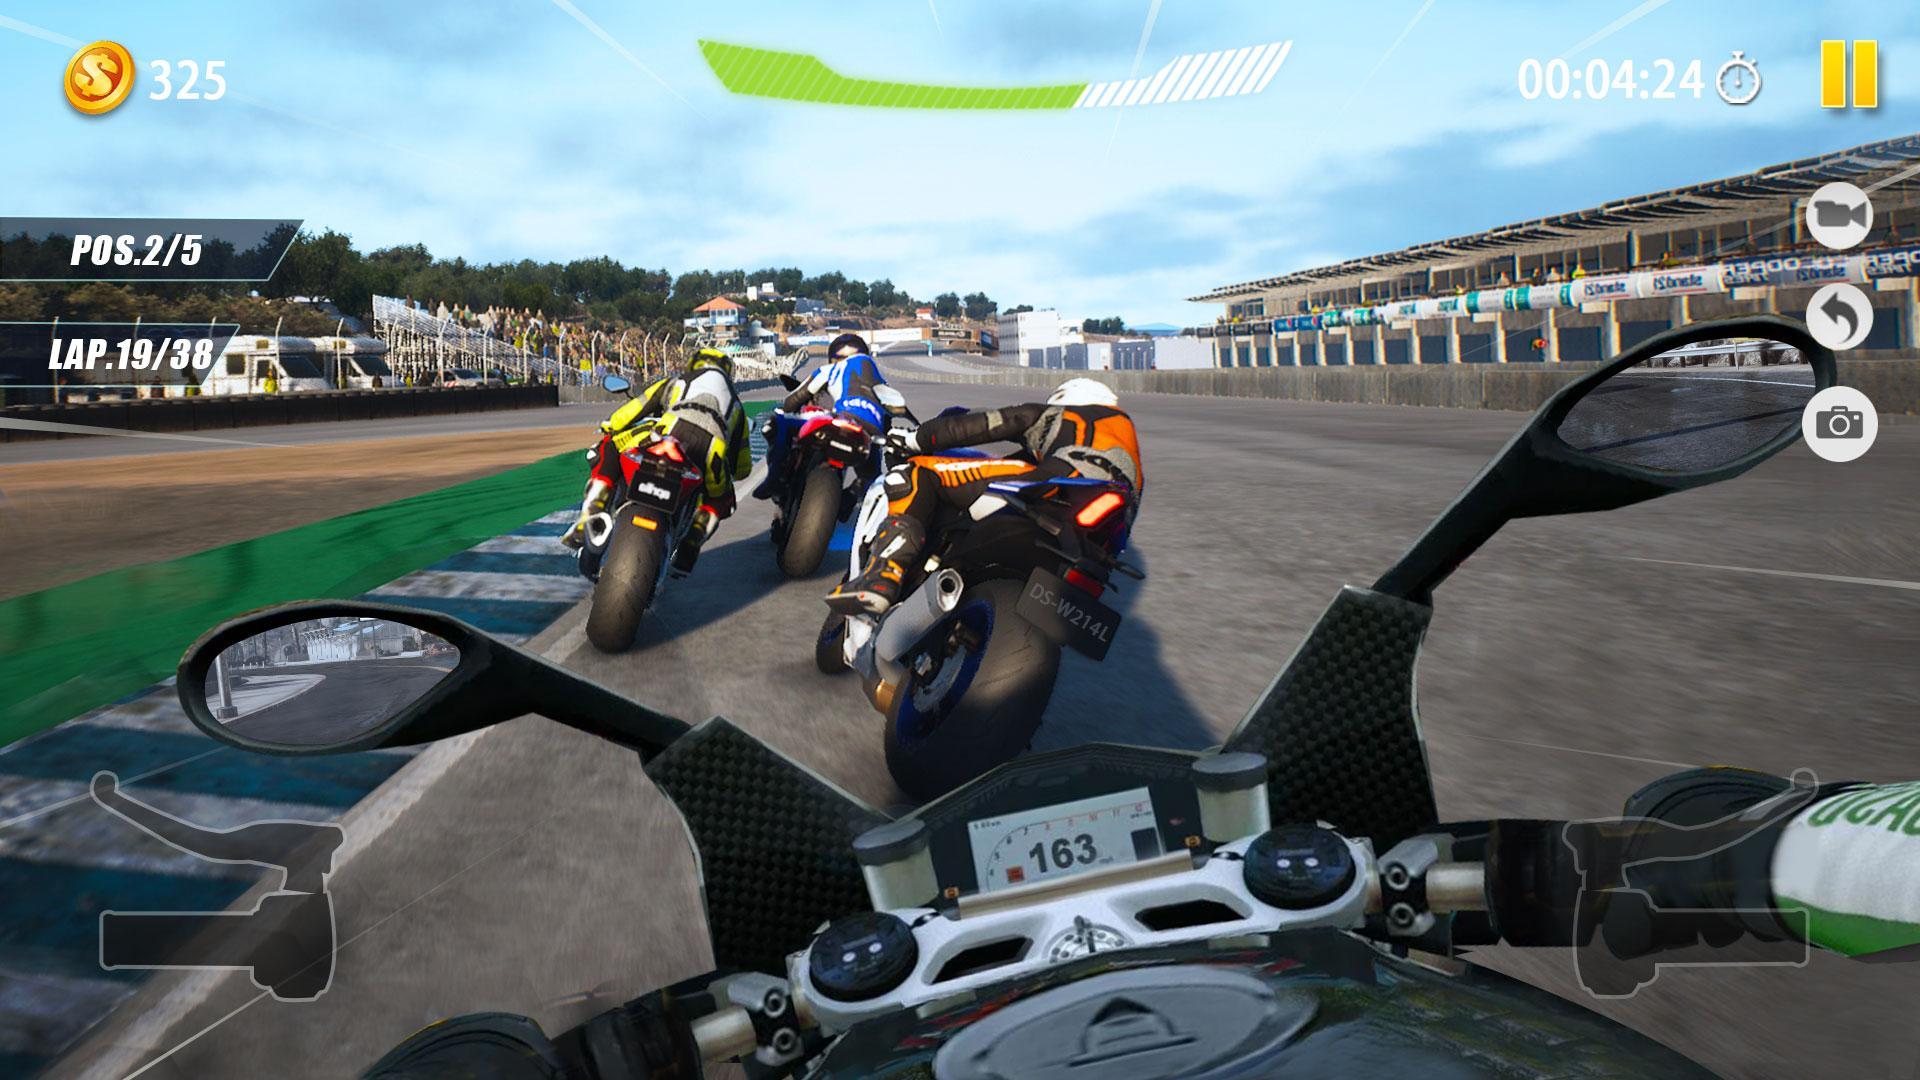 Screenshot 1 of Объявления Traffic Rider 3D lite 